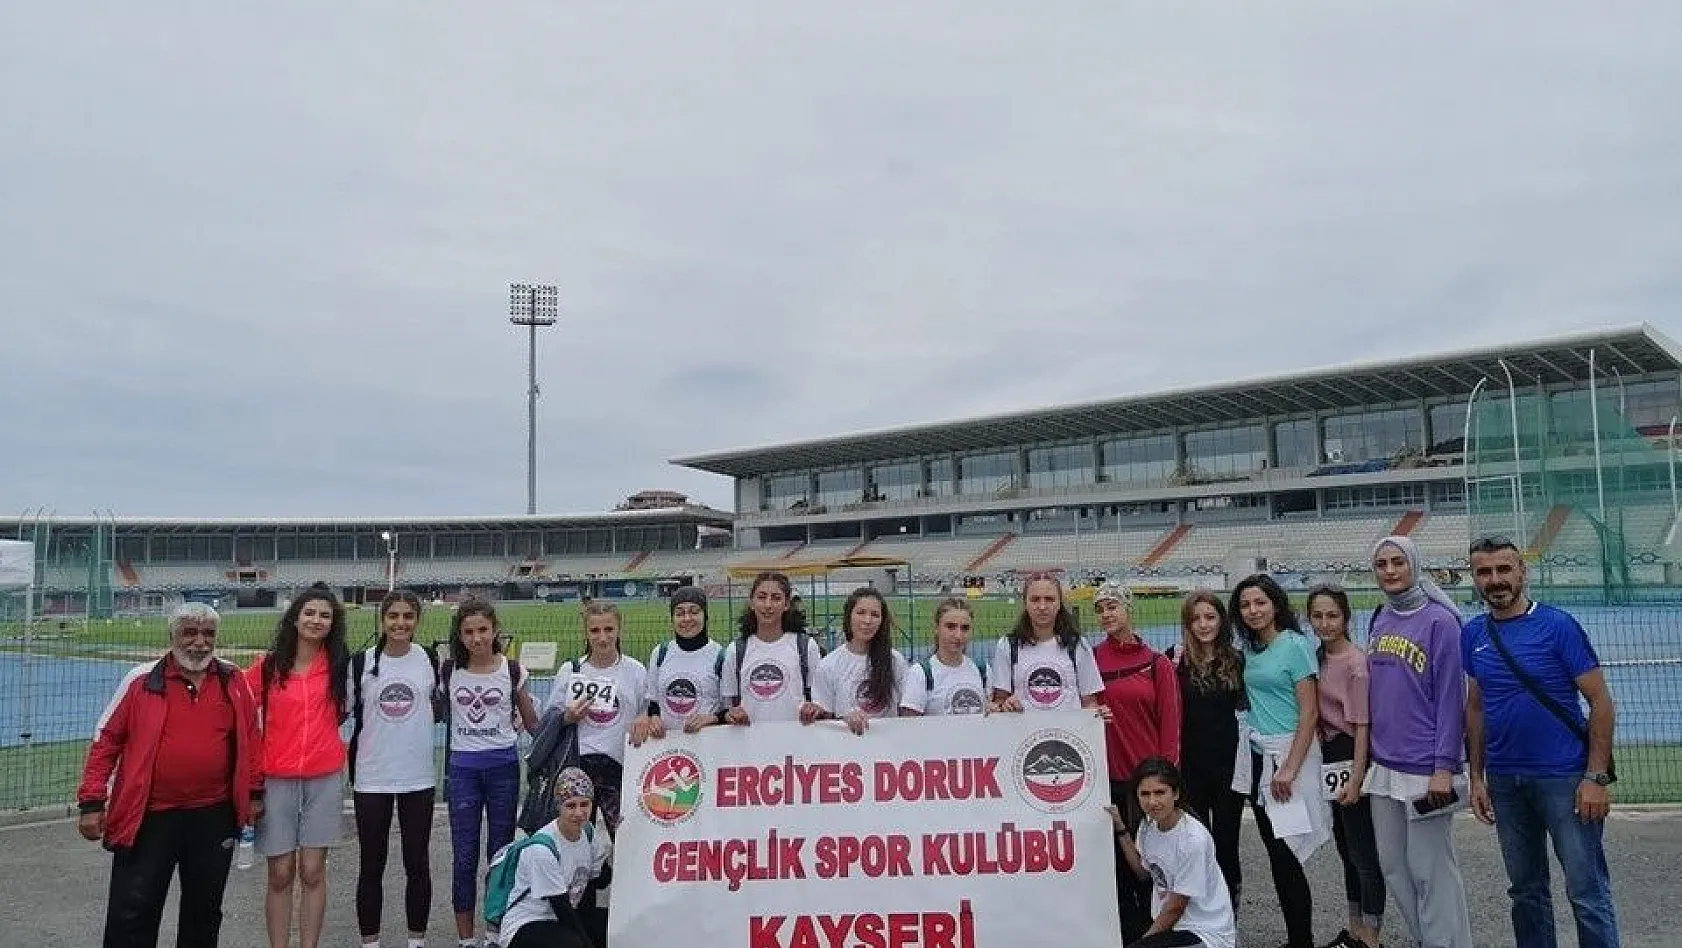 Erciyes Doruk Gençlik Spor Kulübü Atletizm Takımı 1. Lig'de